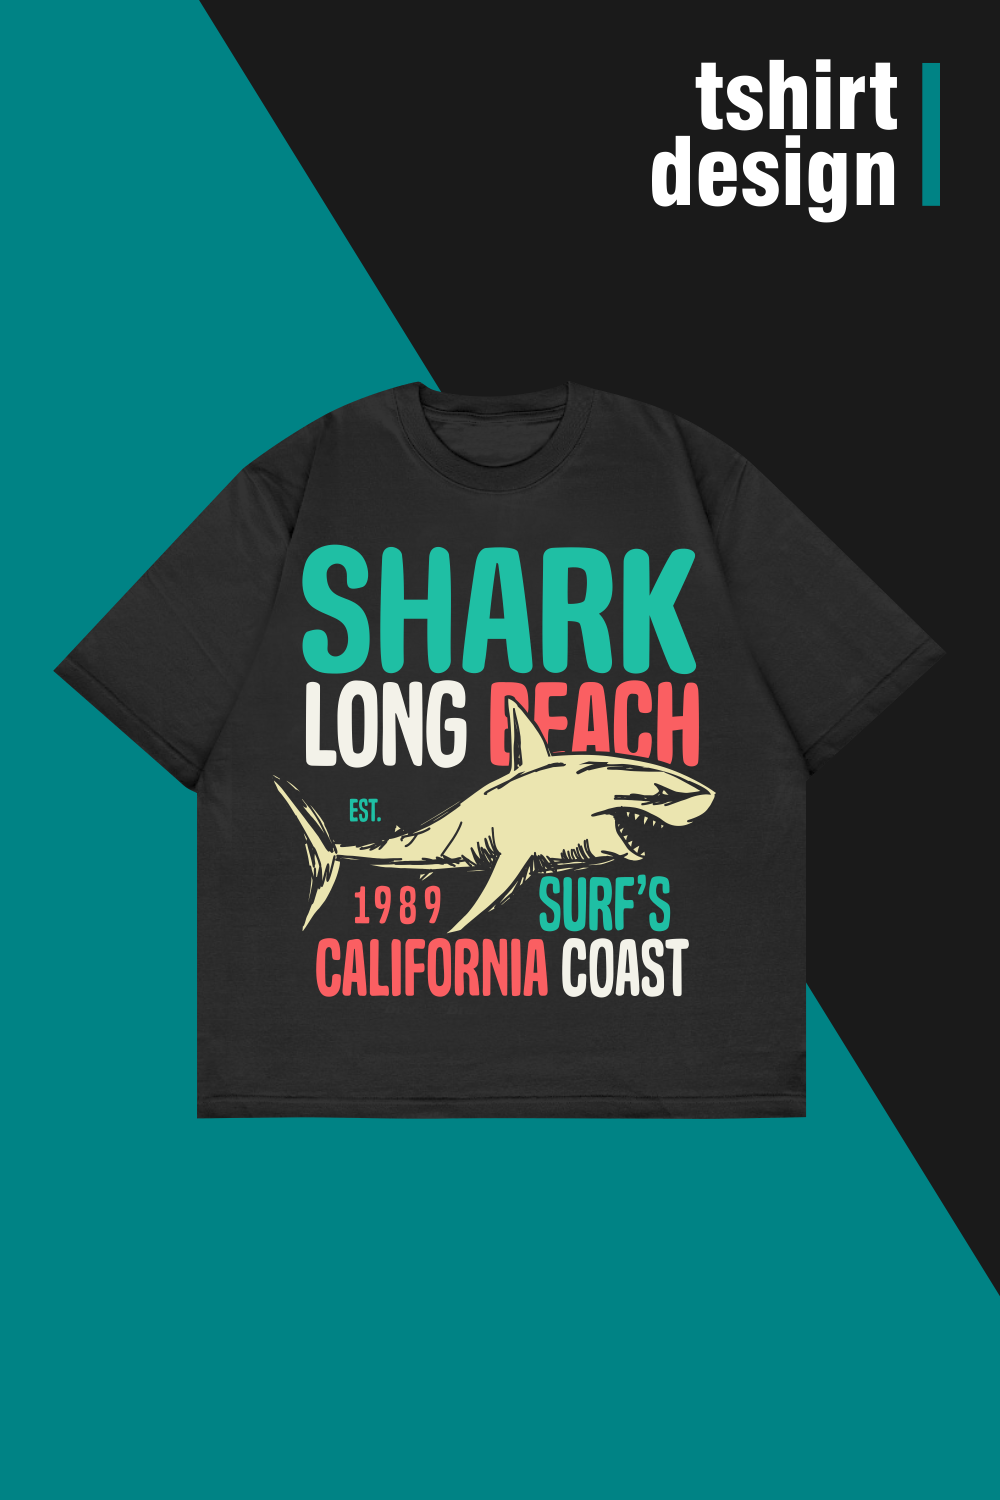 Shark Long Beach California Surf Coast - Modern T Shirt Designs pinterest preview image.